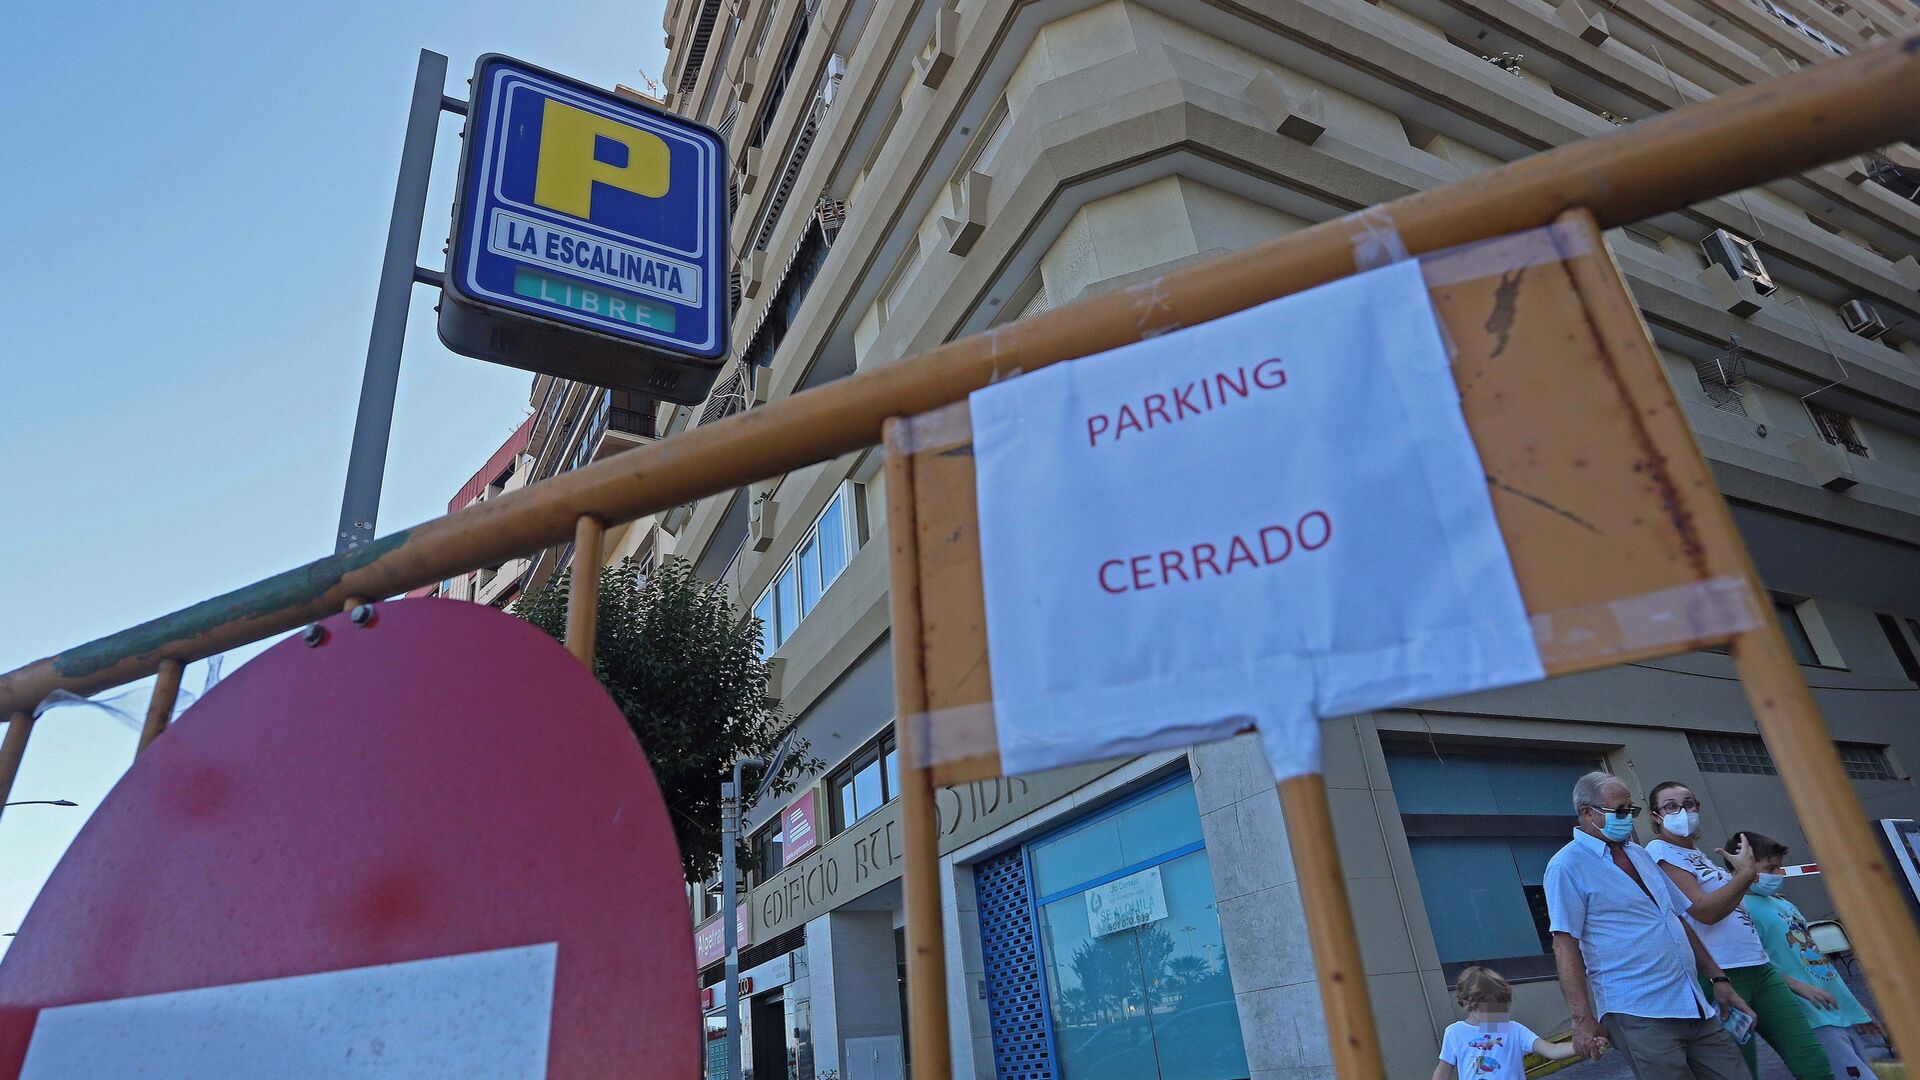 Fotos del cierre del parking La Escalinata en Algeciras